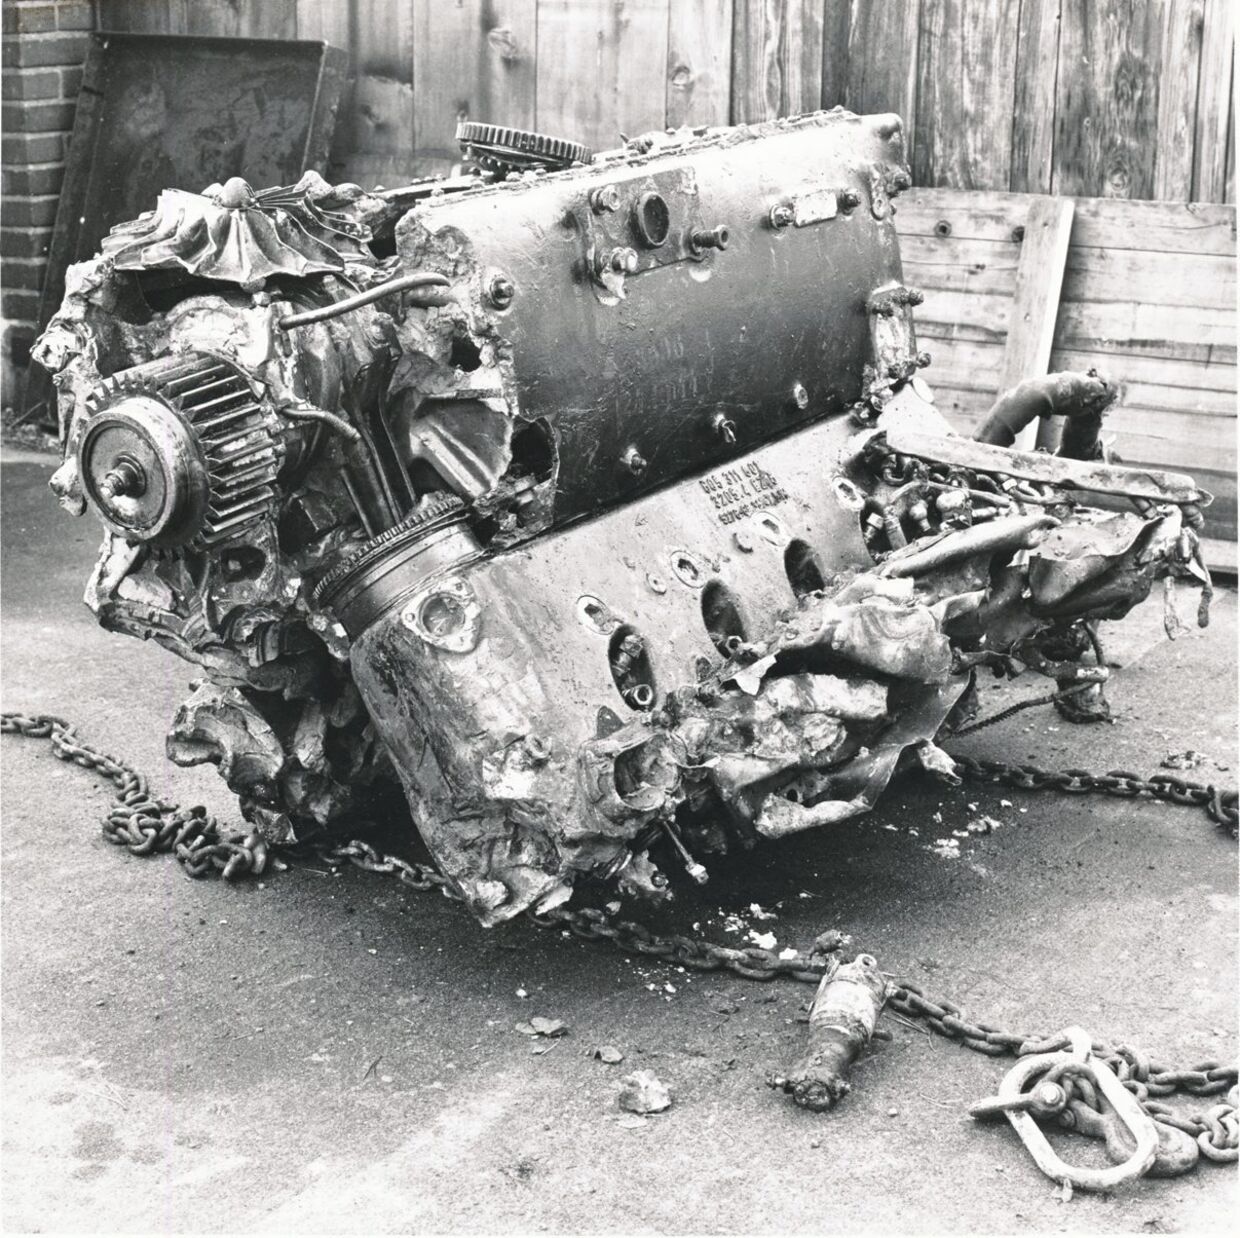 Ved udgravningerne til forlængelsen af den østjyske motorvej i 1983 stødte myndighederne på vraget af Minks fly, der var overraskende intakt. Her er det den store V12 Mercedesmotor.